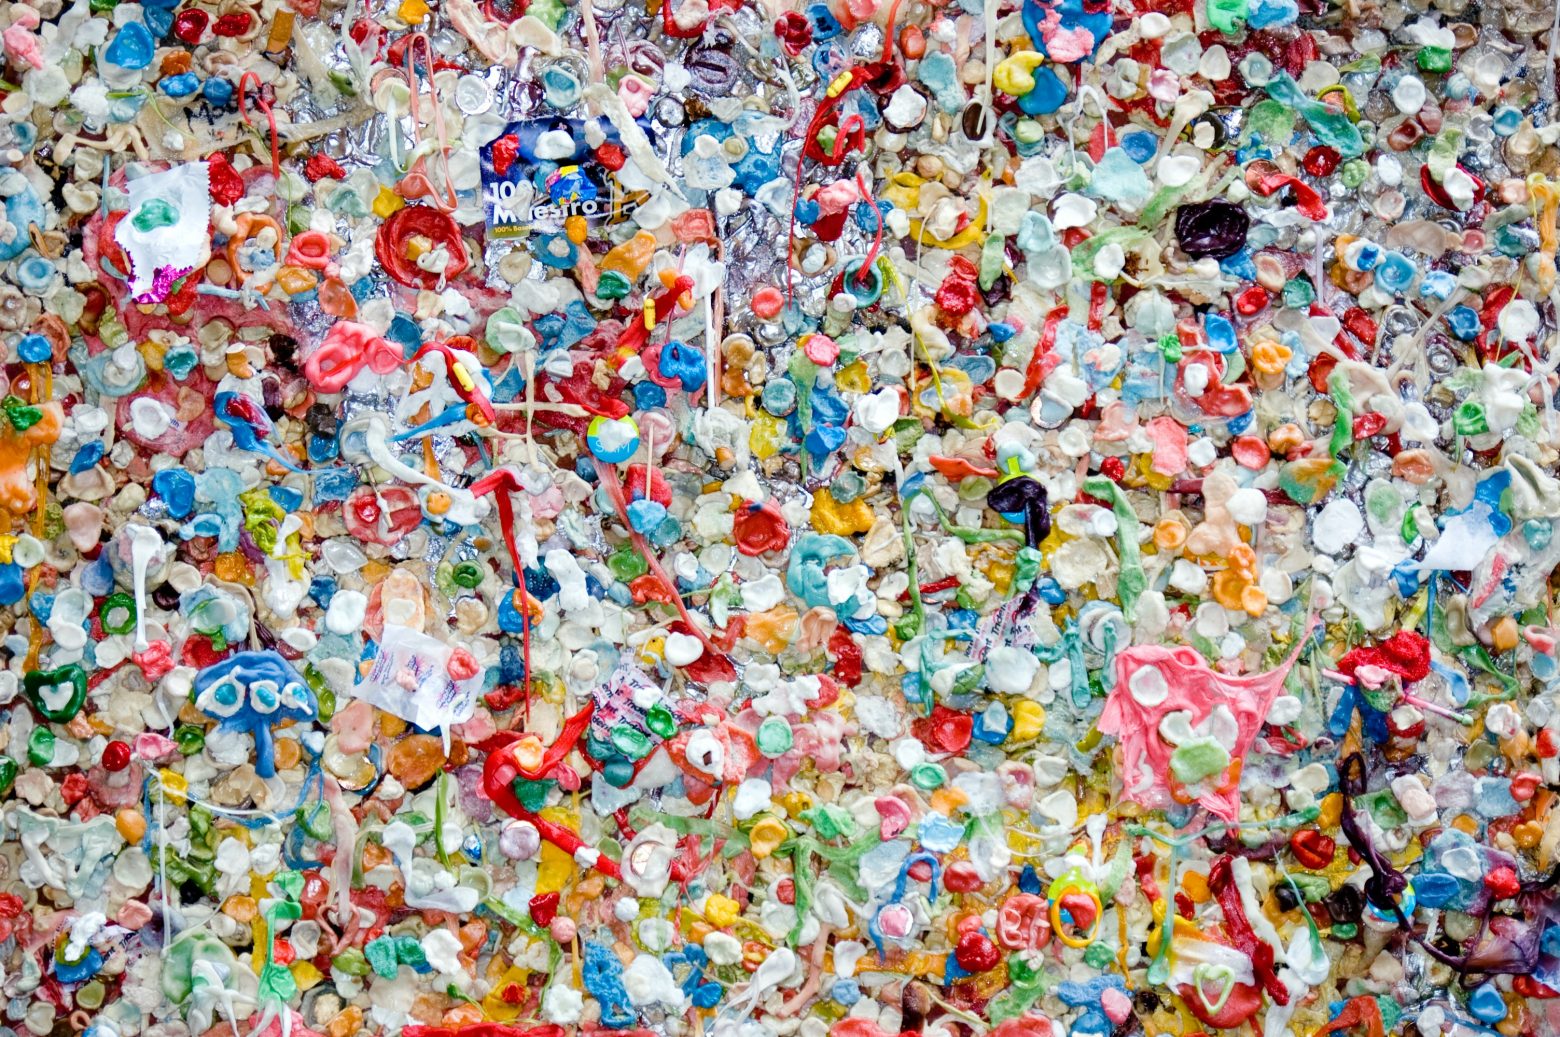 Χημική ανακύκλωση: Μπορεί το πλαστικό να ανακυκλώνεται επ’ άπειρον;